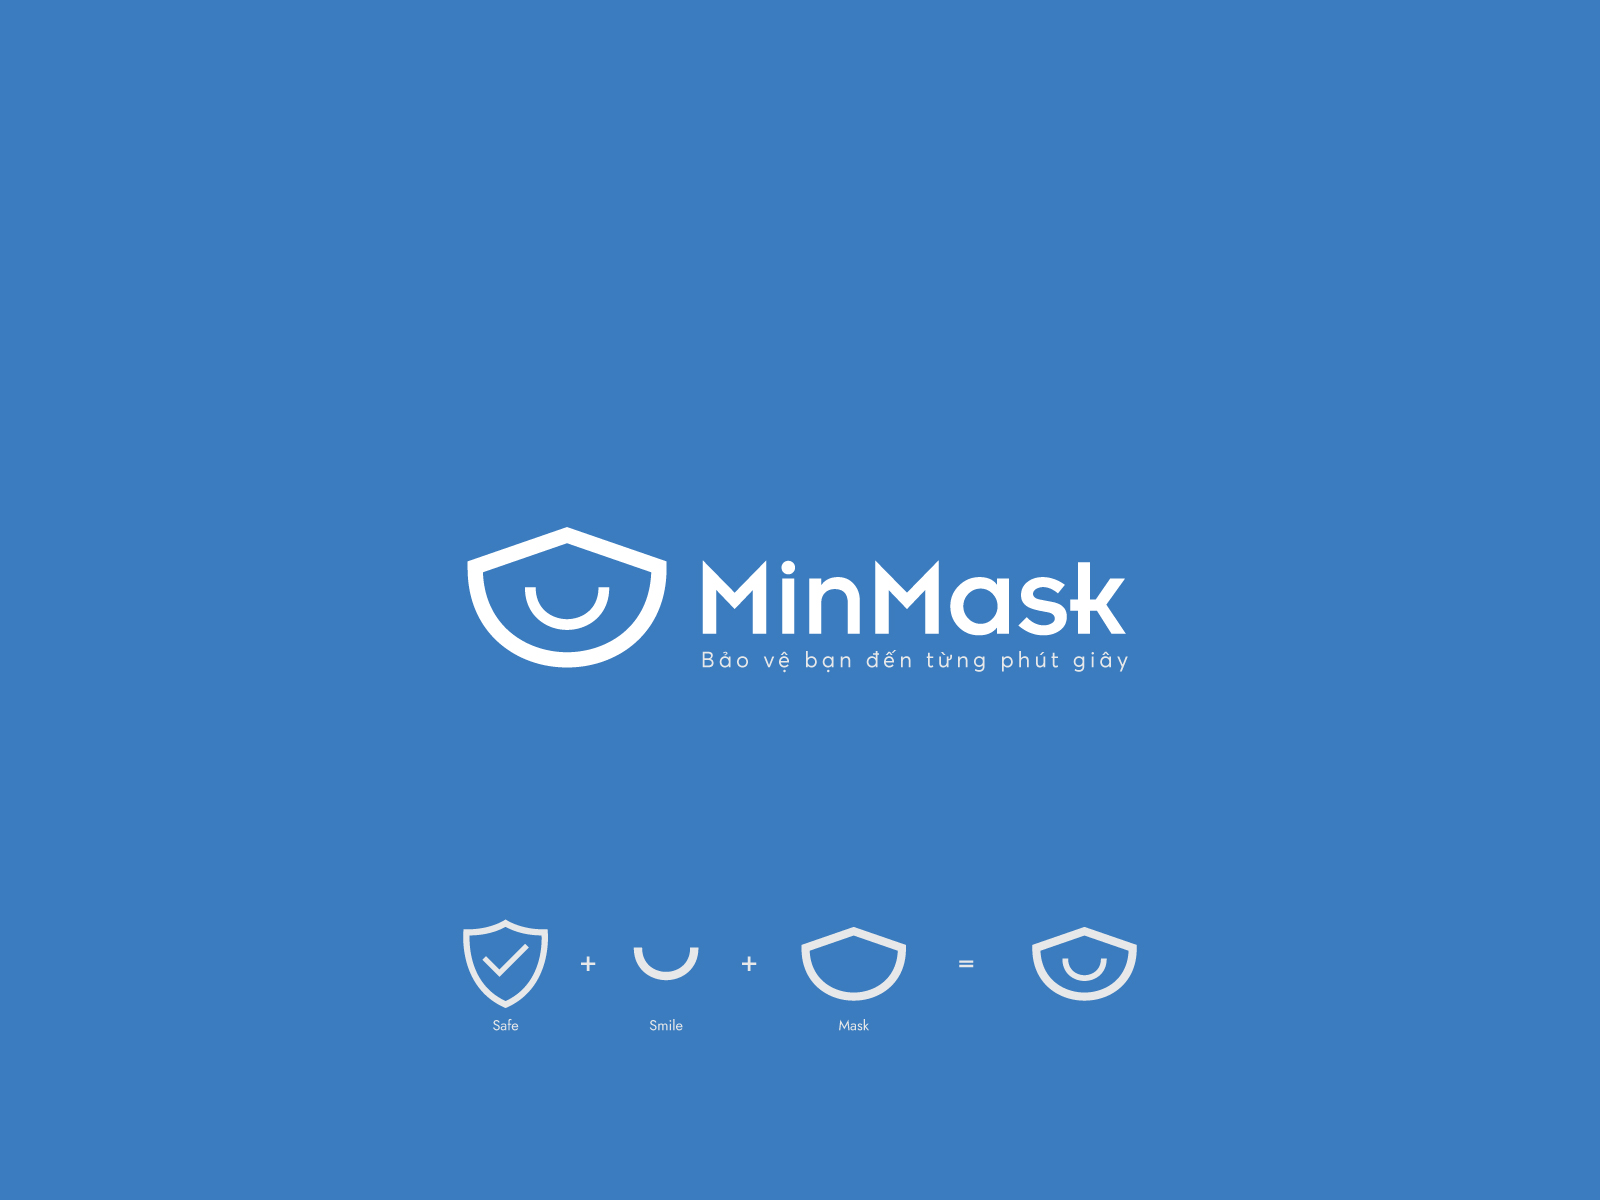 Minmask logo 9